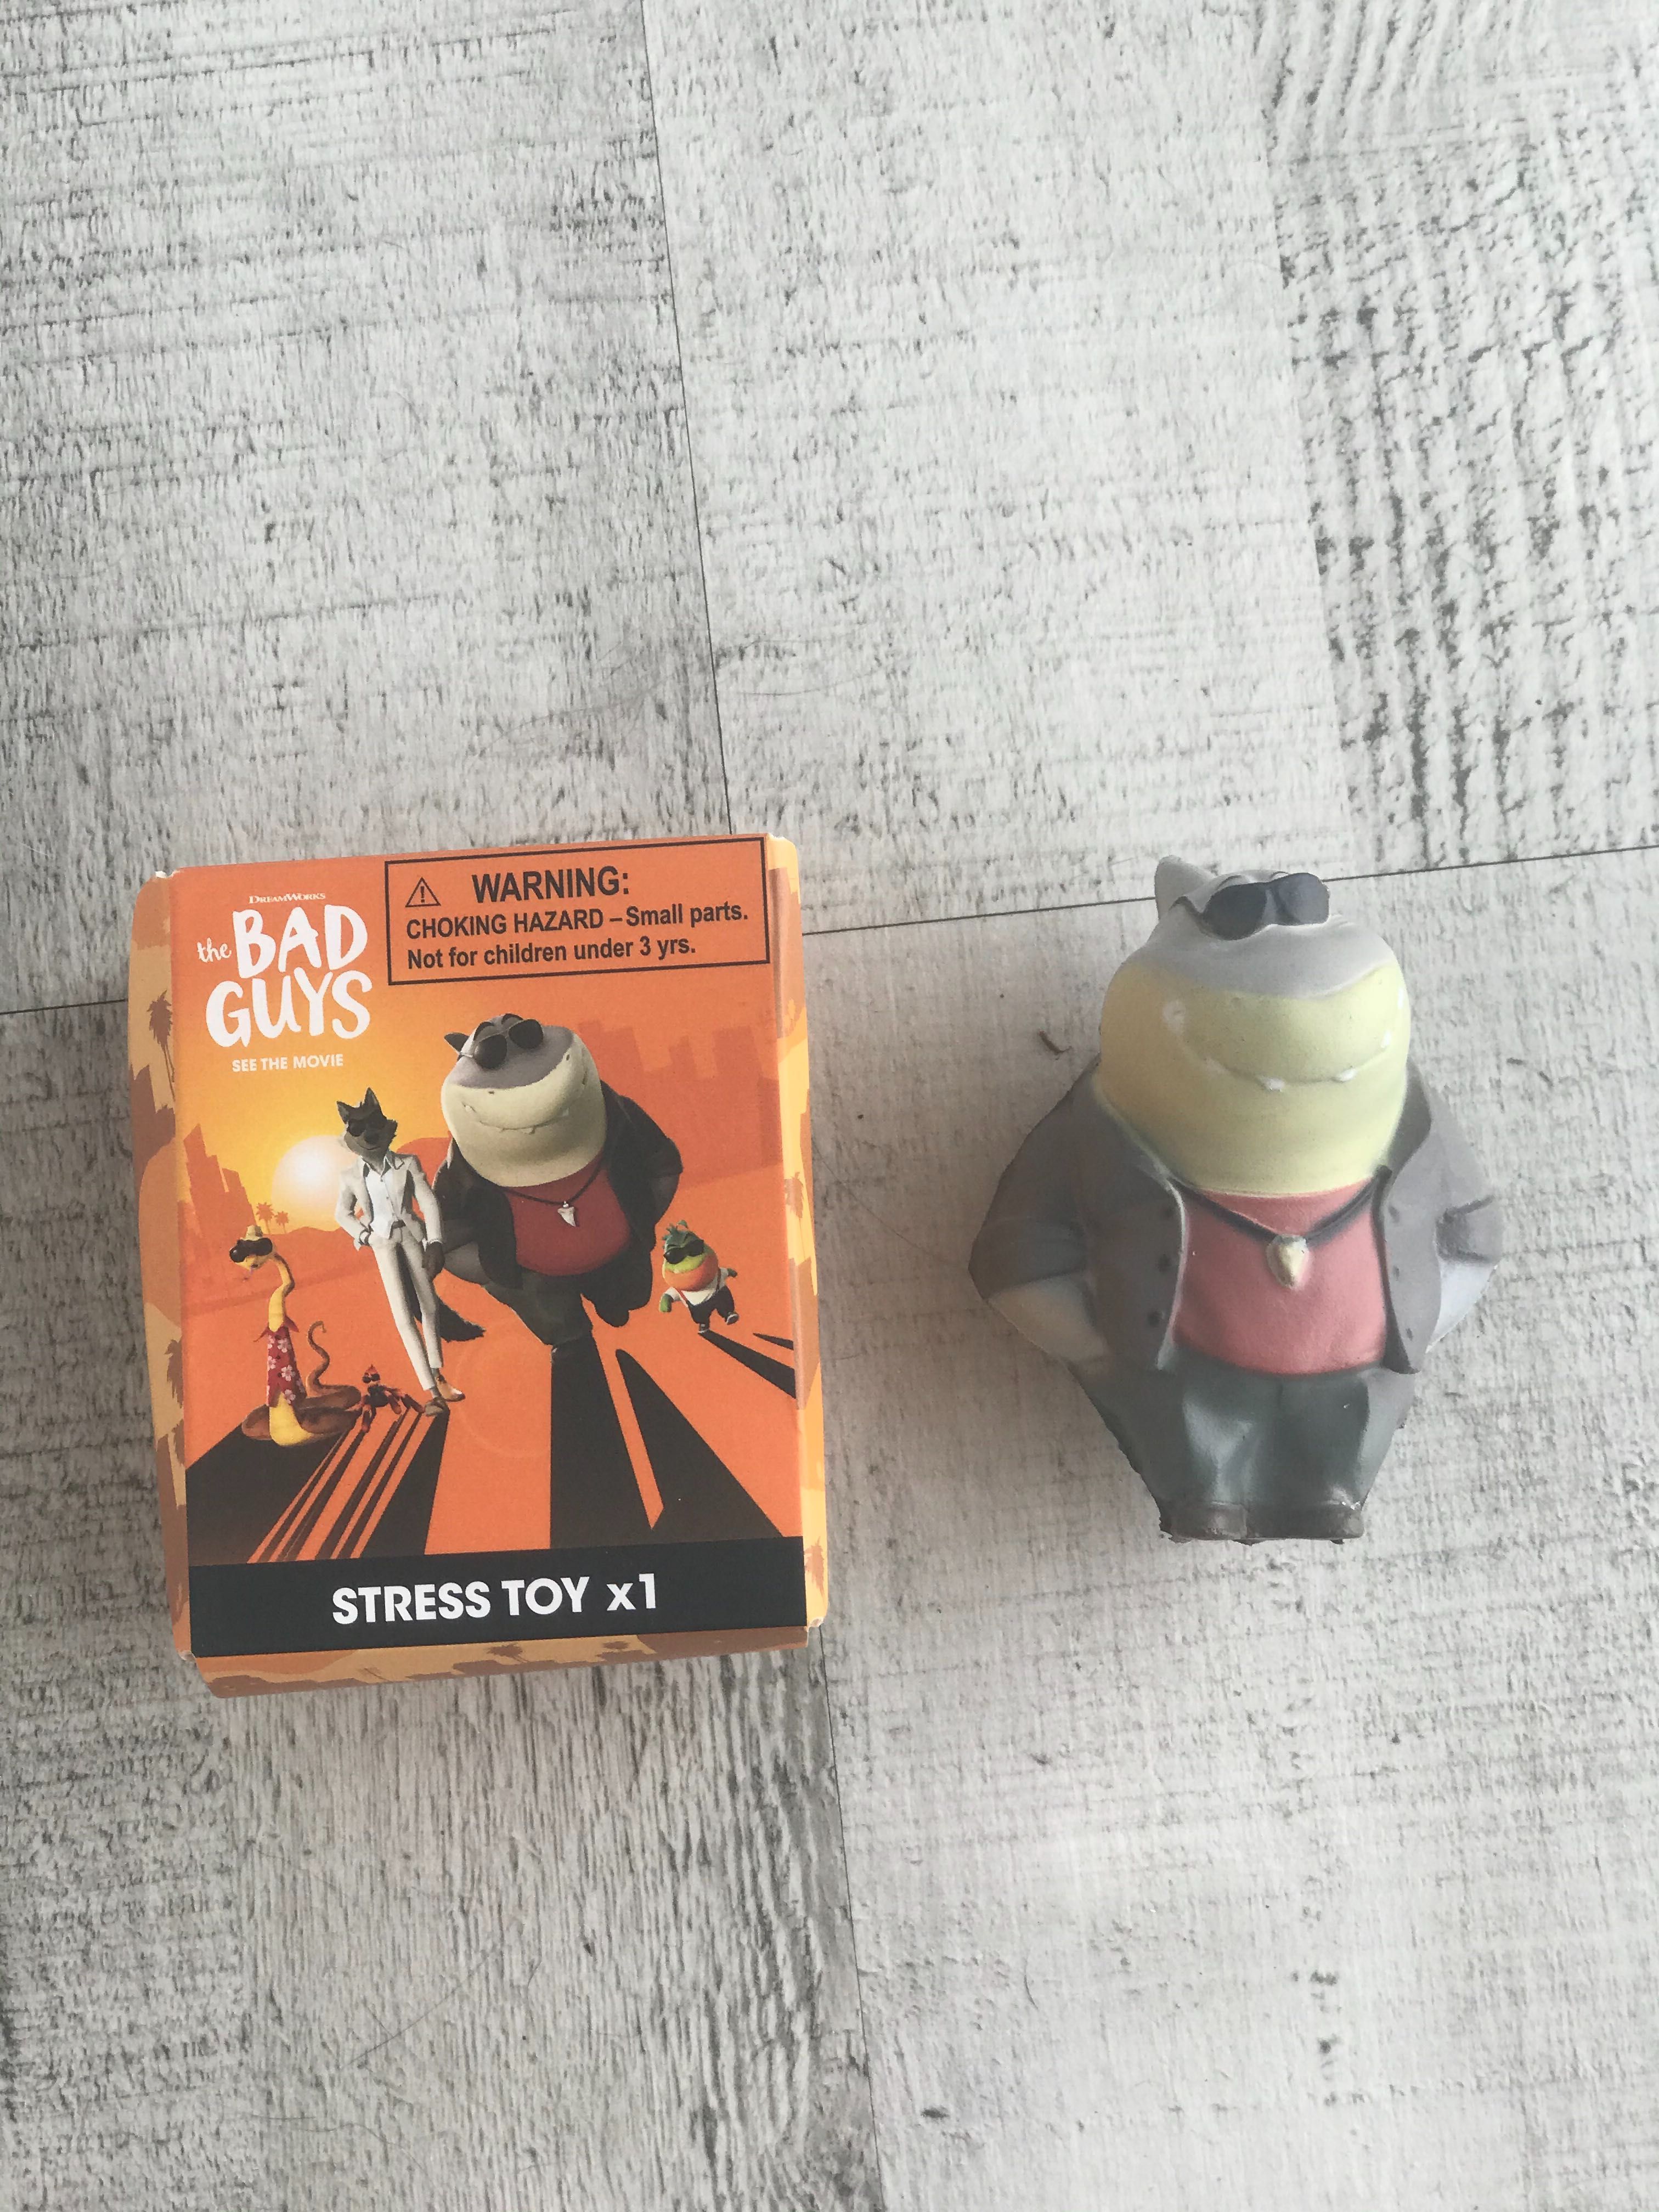 Brinquedo anti stress e porta-chaves do filme “Os Mauzões”